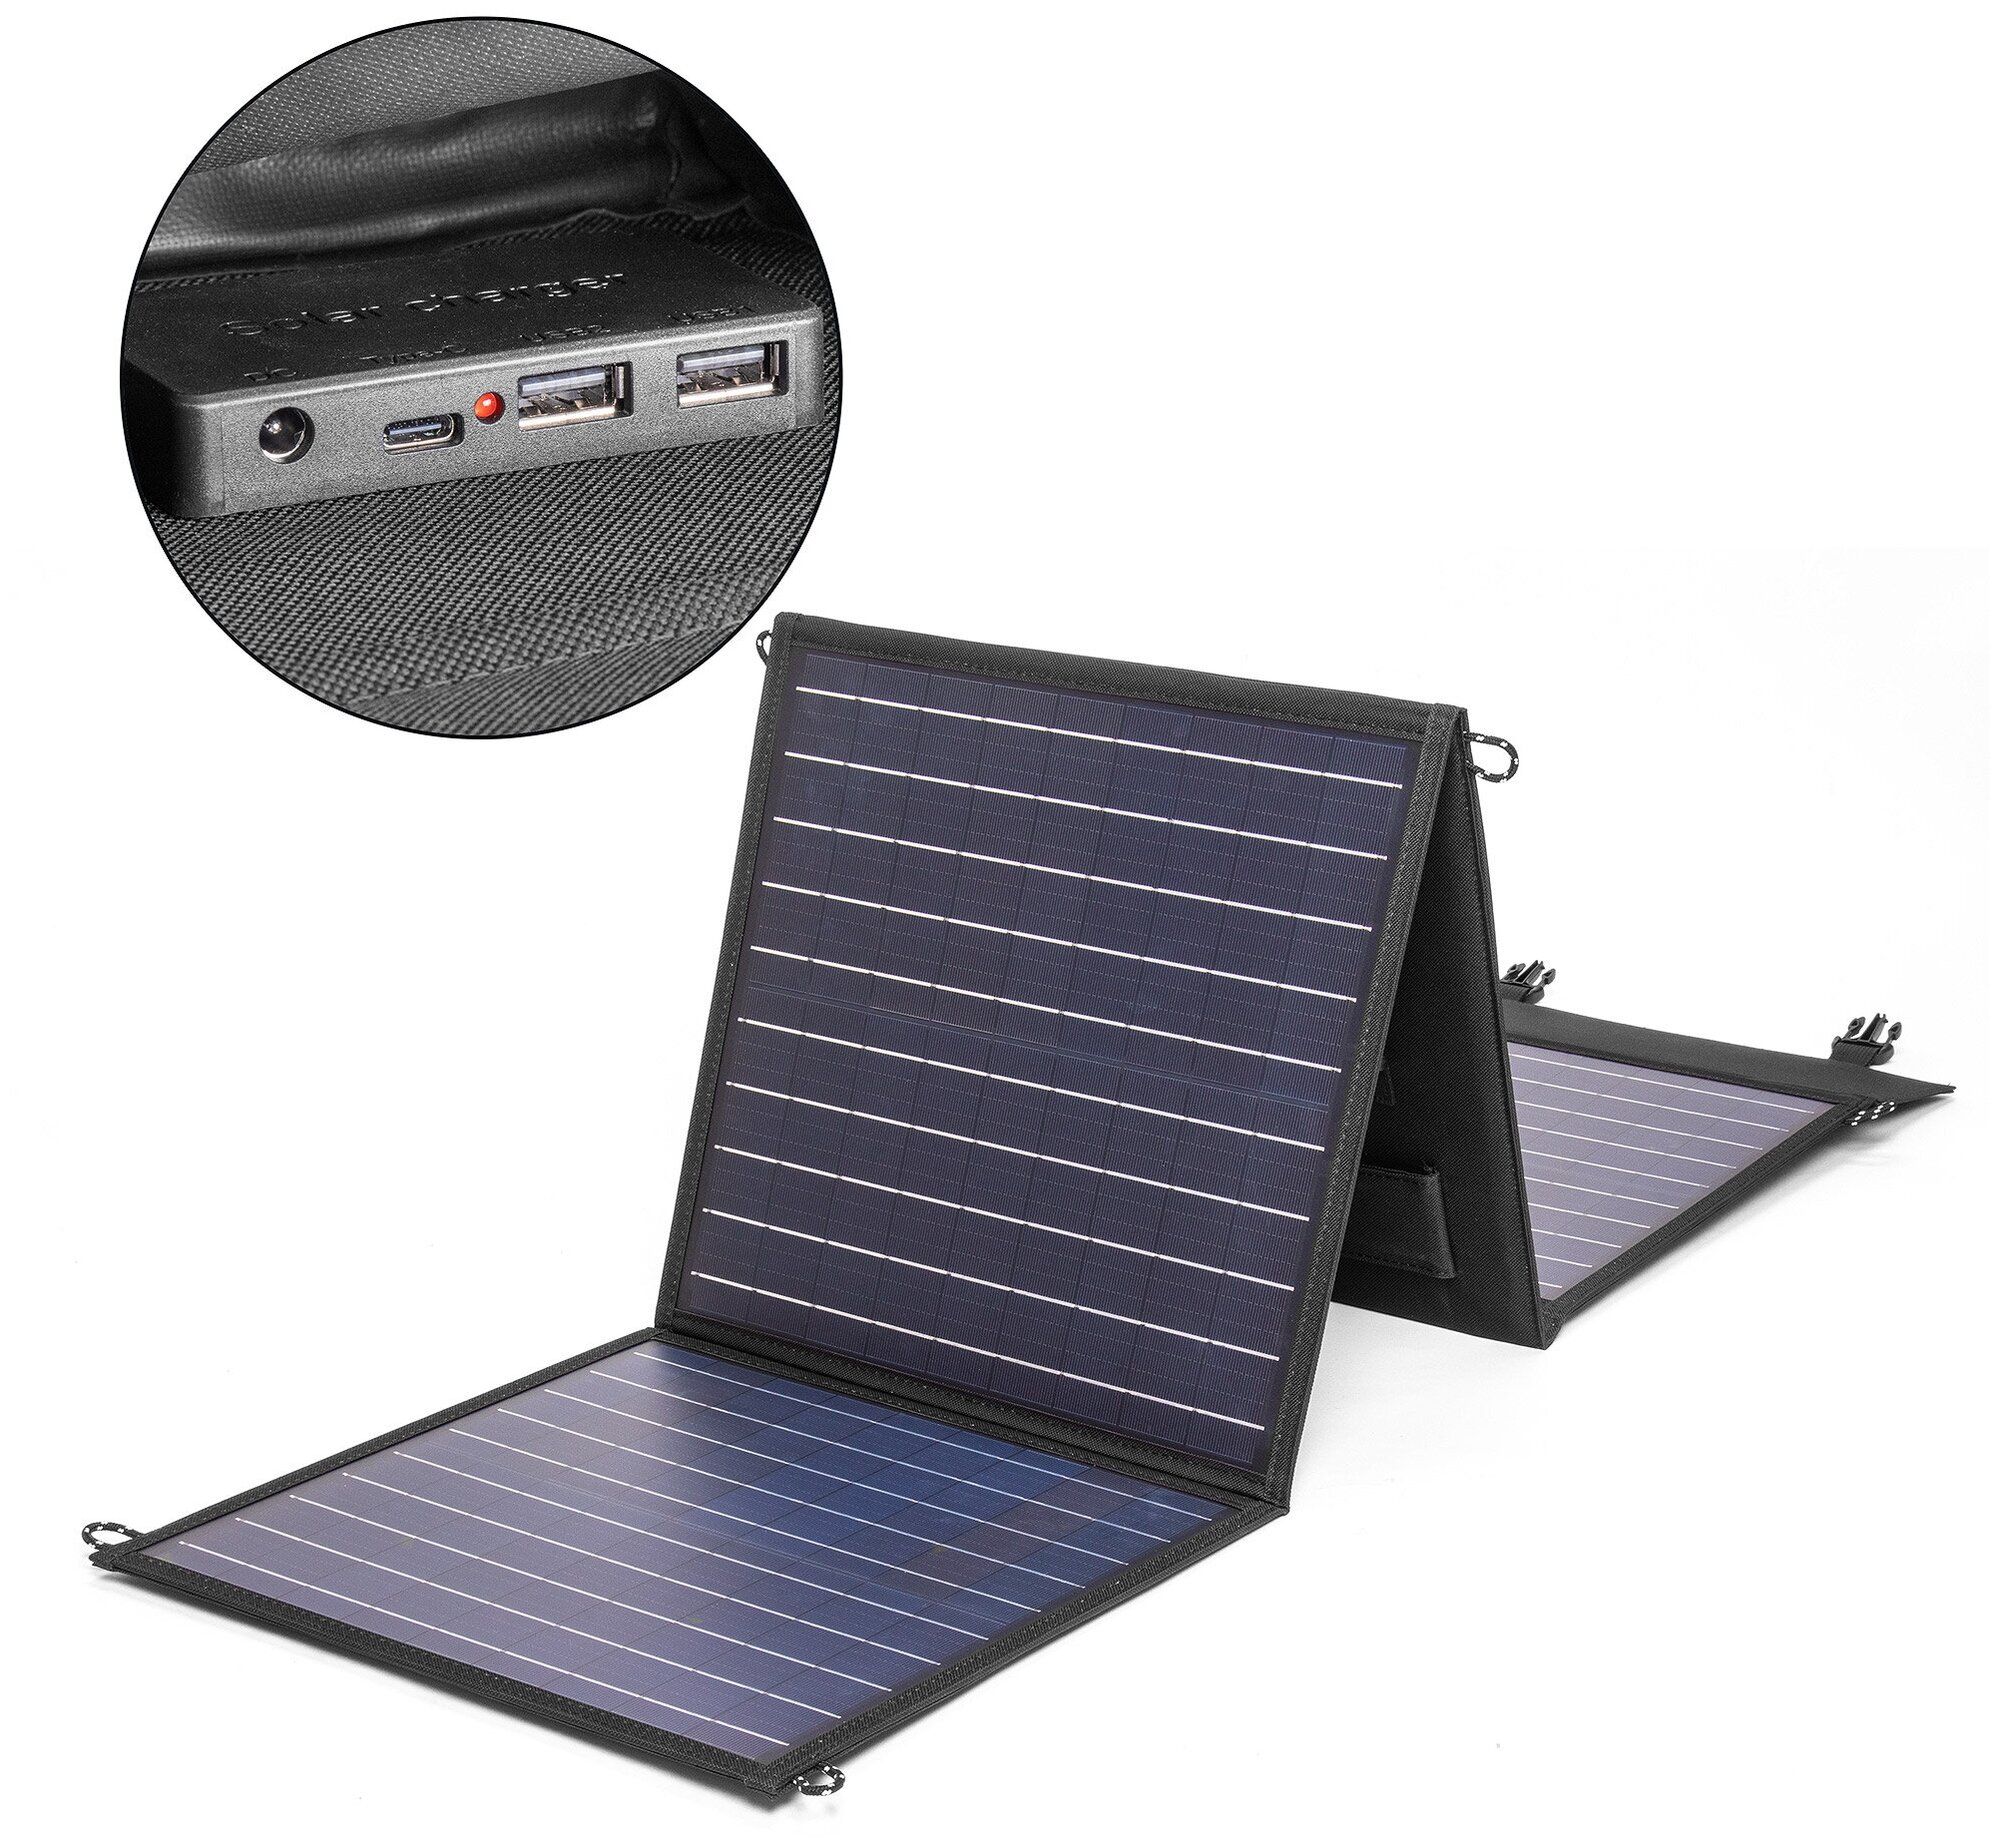 Солнечная батарея TOP-SOLAR-80 80W 18V DC, Type-C PD 60W, 2 USB, влагозащищенная, складная на 4 секции